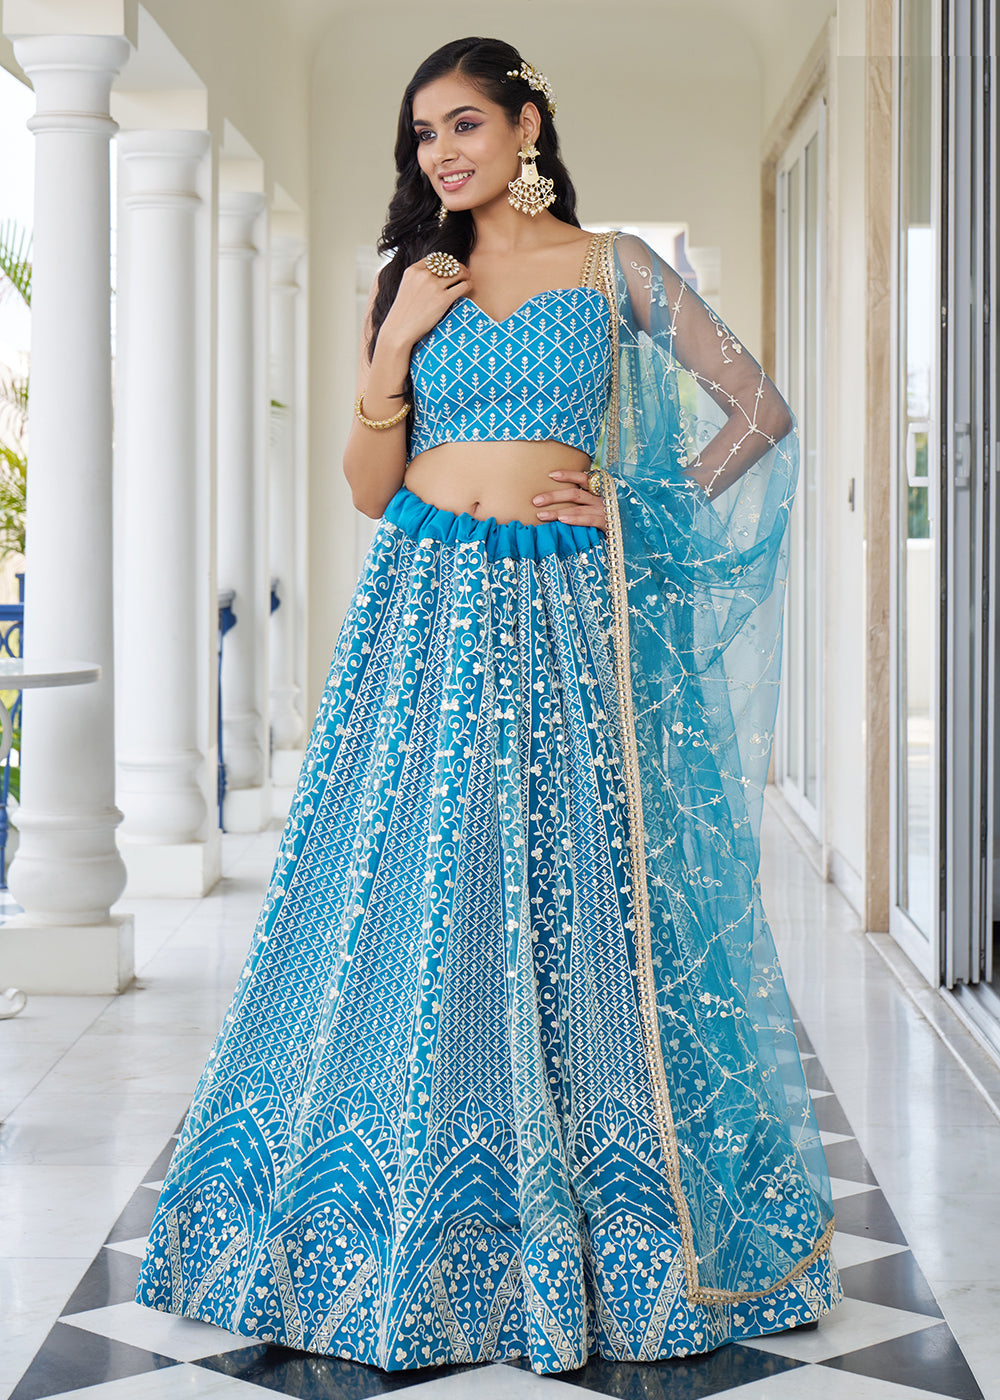 Buy Now Azure Blue Designer Embroidered Wedding Lehenga Choli Online in USA, UK, Canada & Worldwide at Empress Clothing.